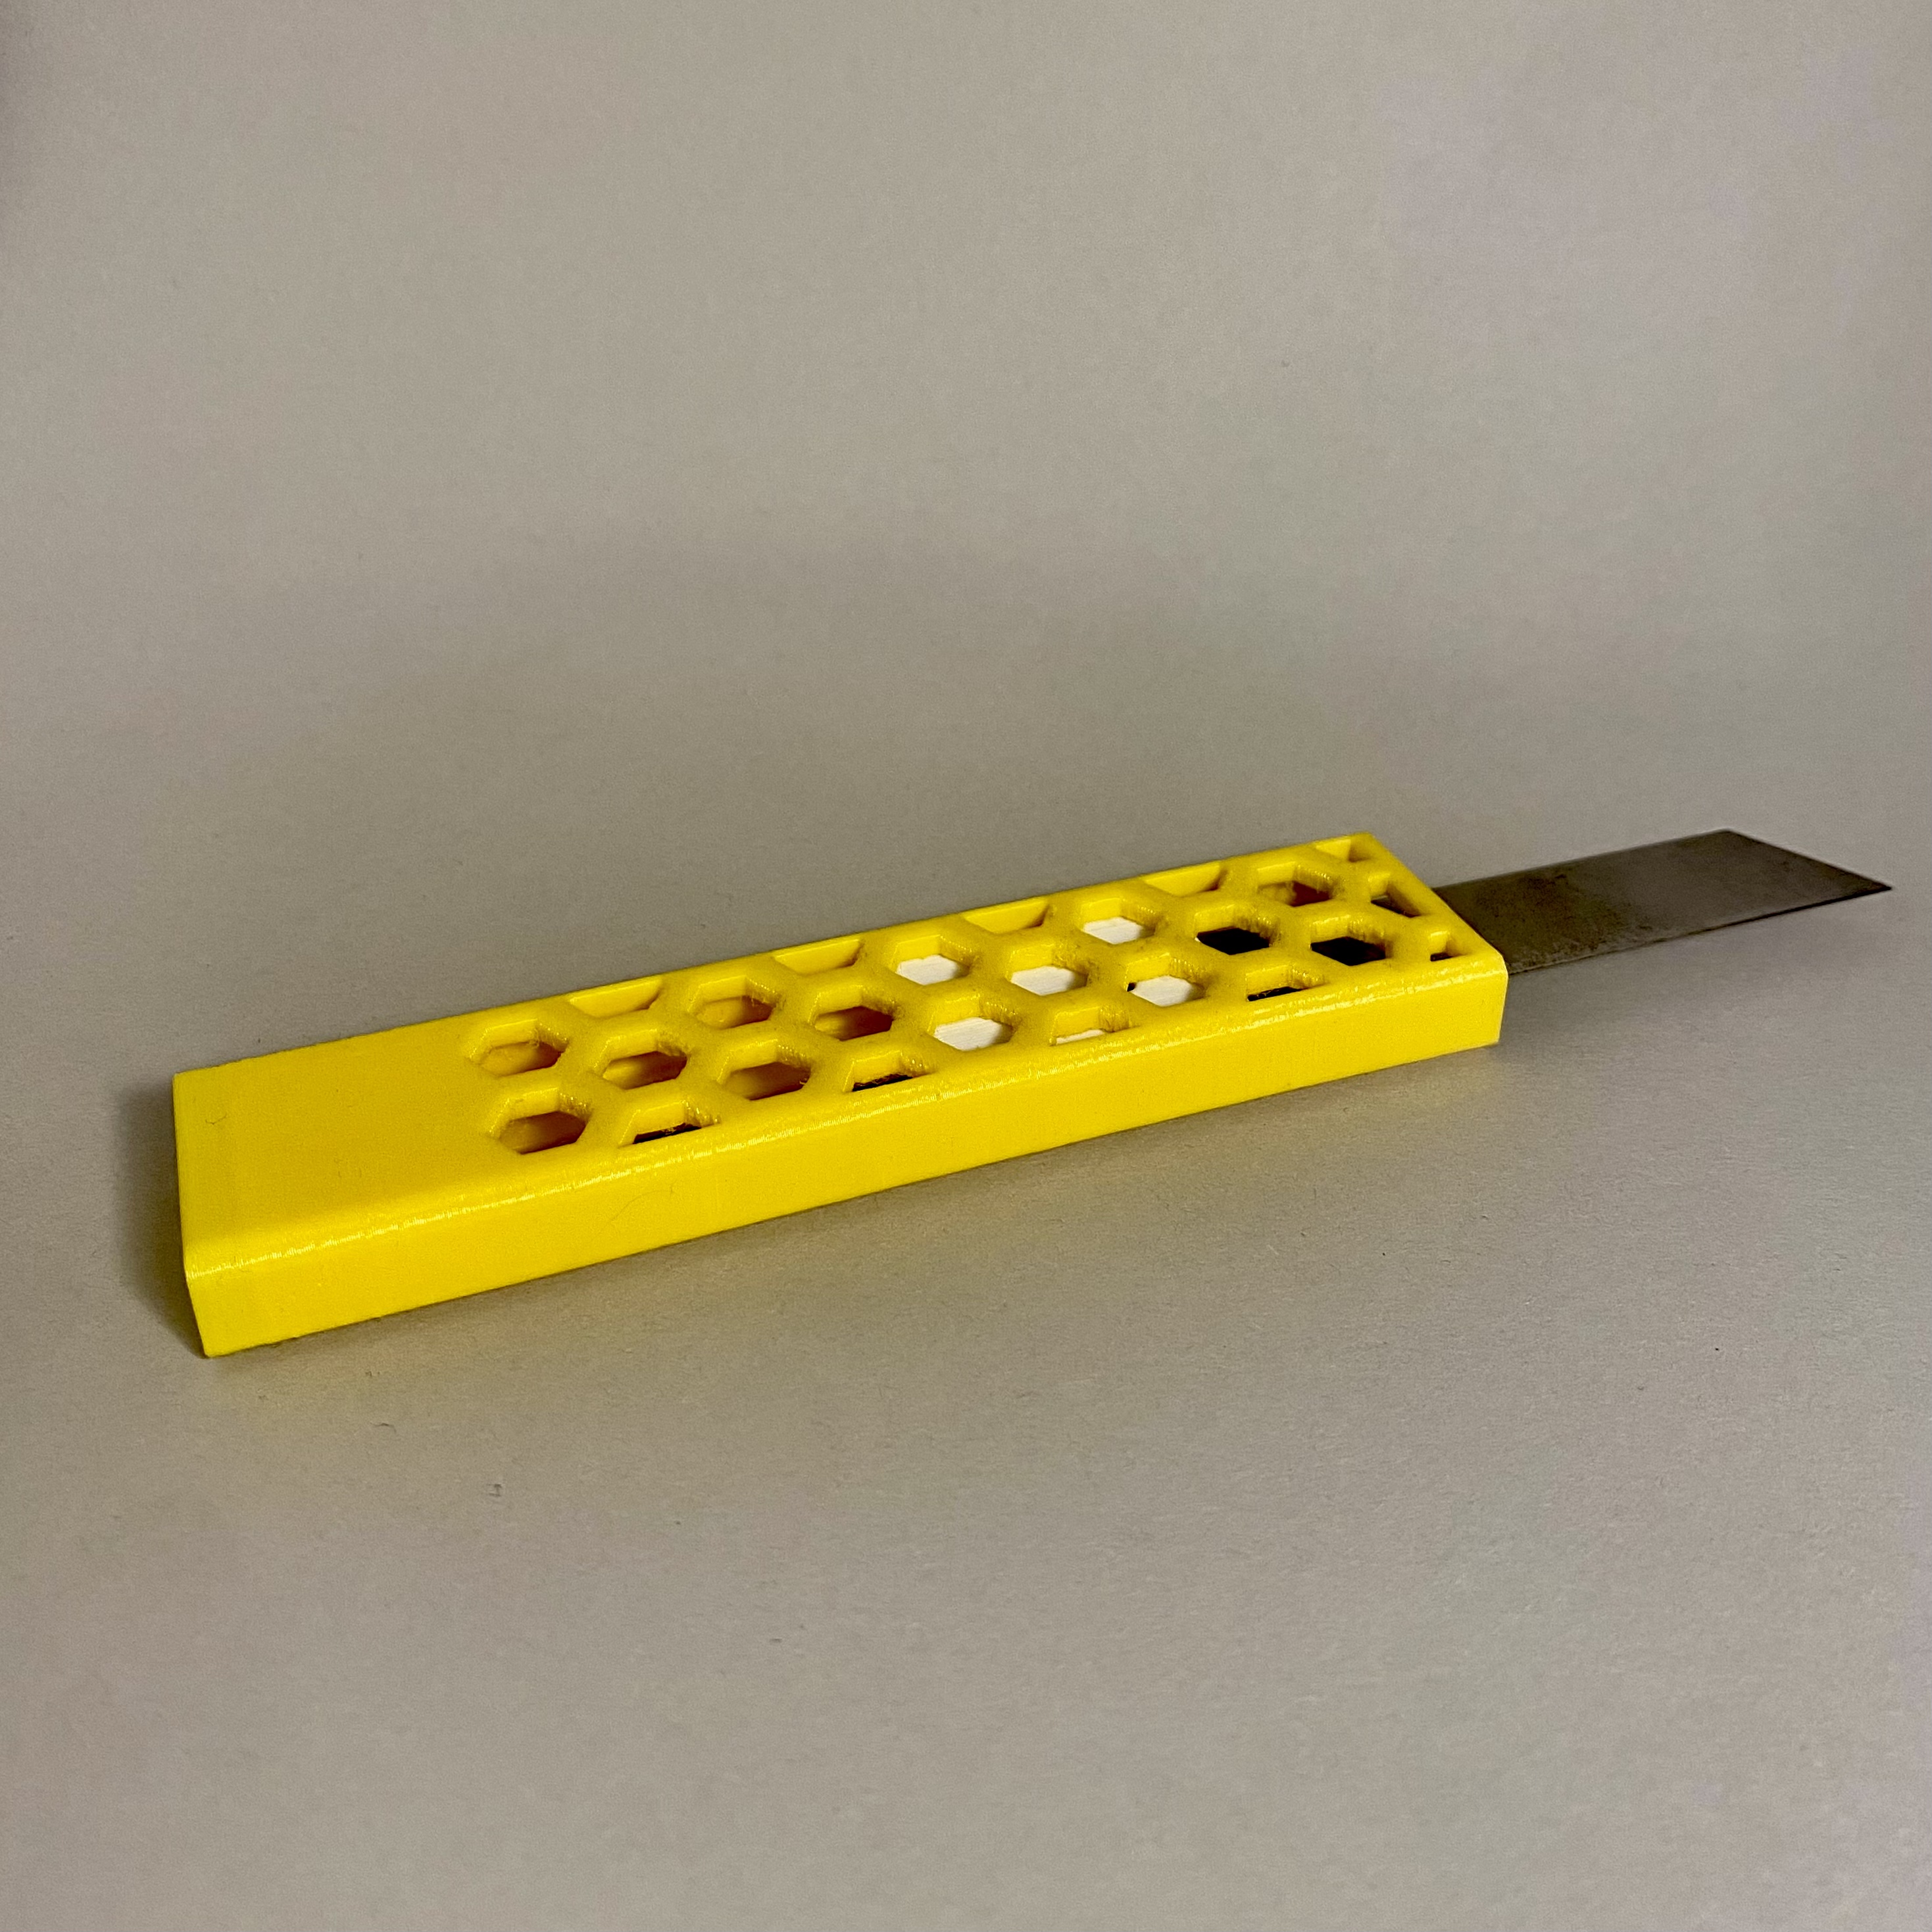 utility knife / cutter knife / cuttermesser